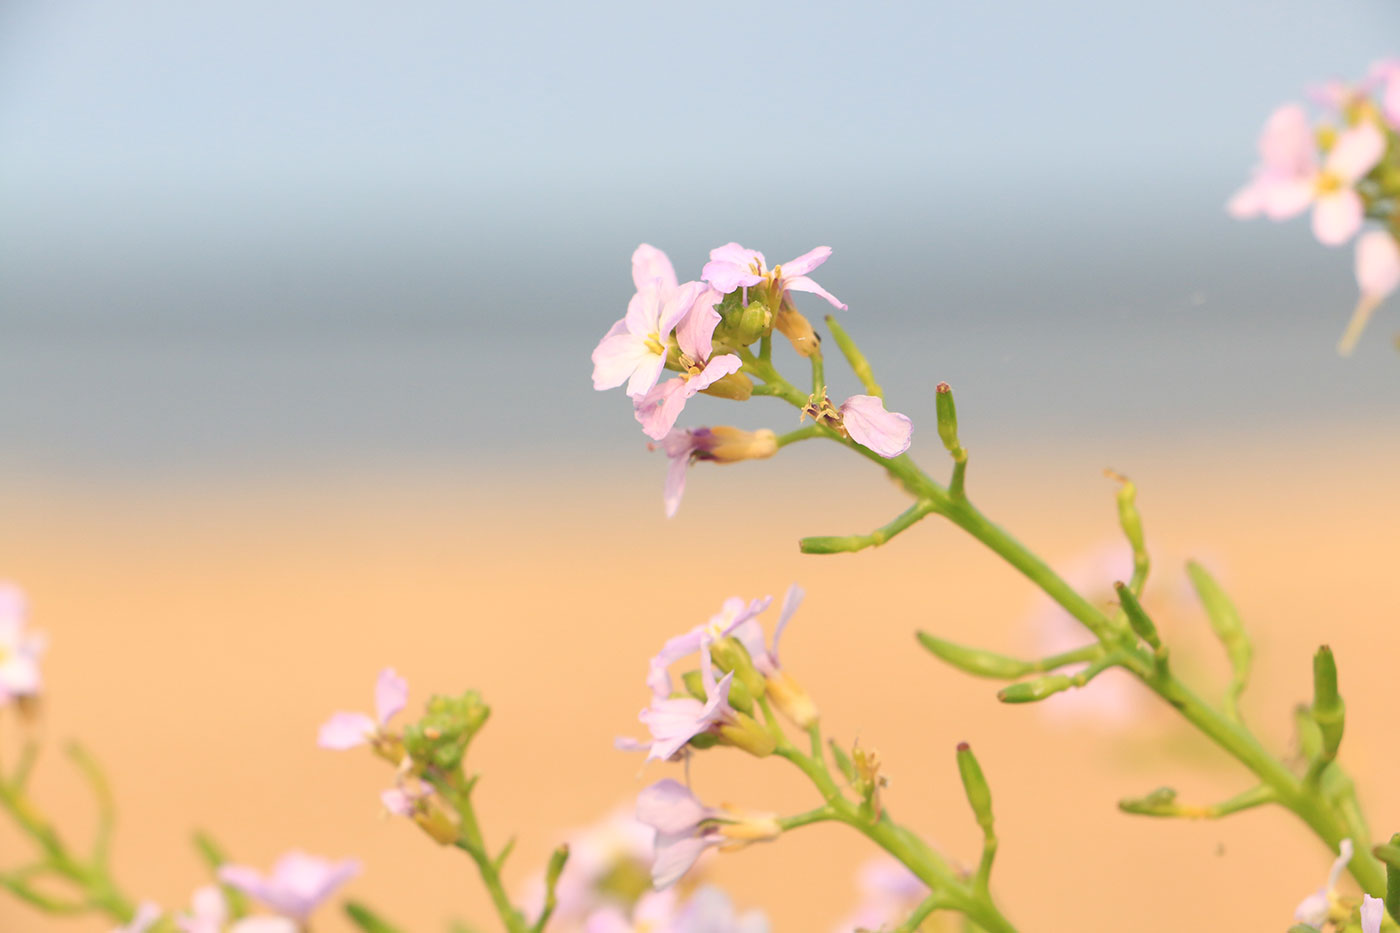 Blomma i närbild med hav och strand i bakgrunden